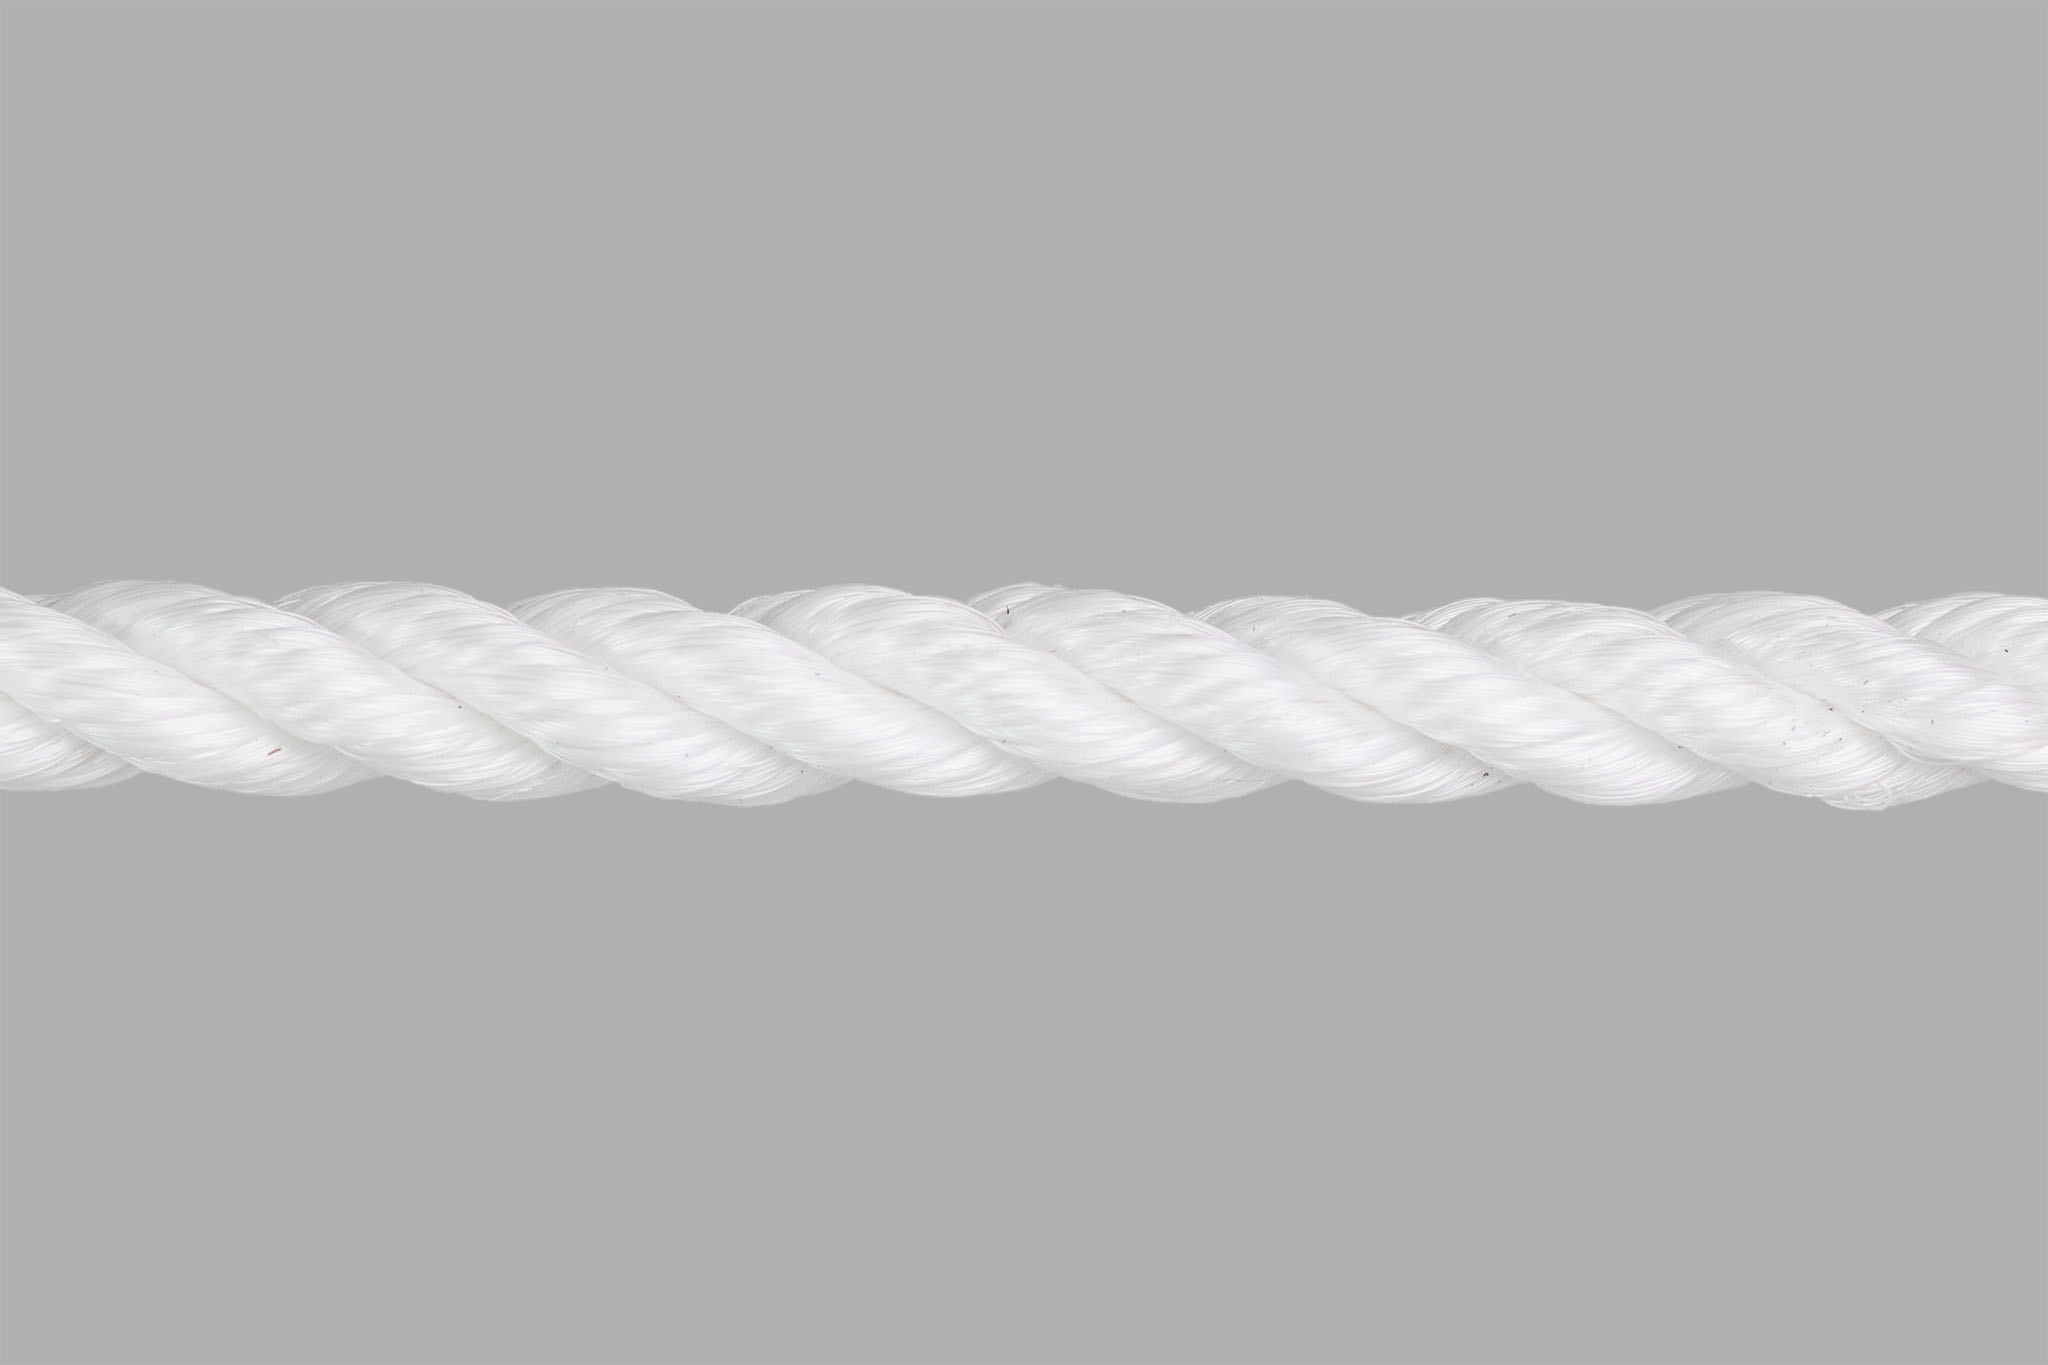 3 Strand Polypropylene Rope